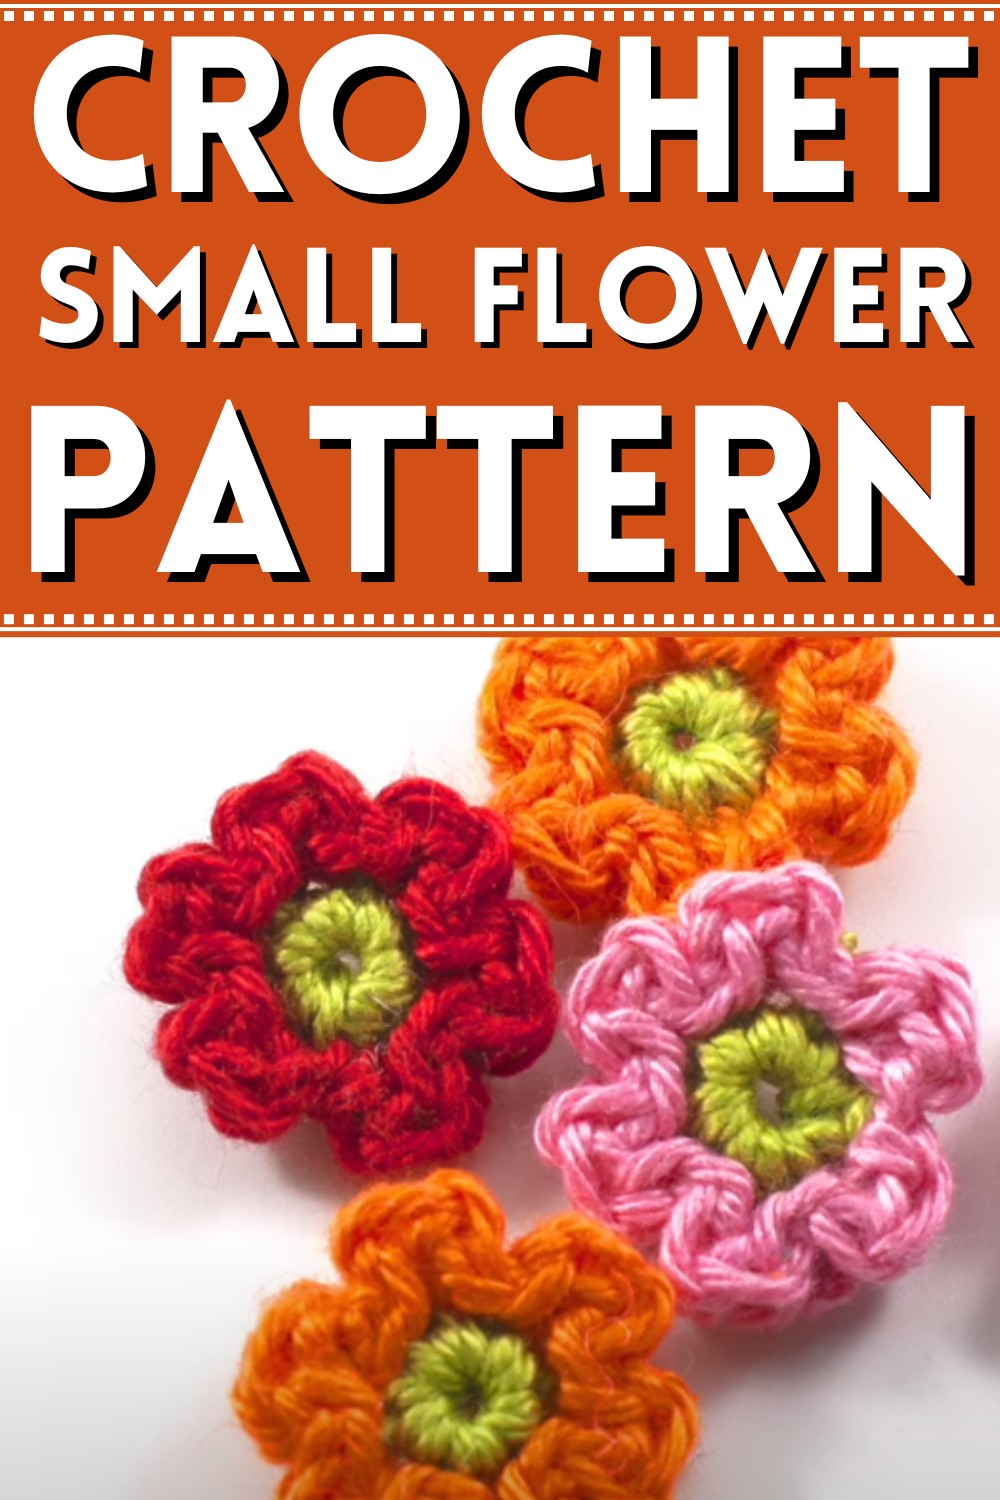 Crochet A Small Flower